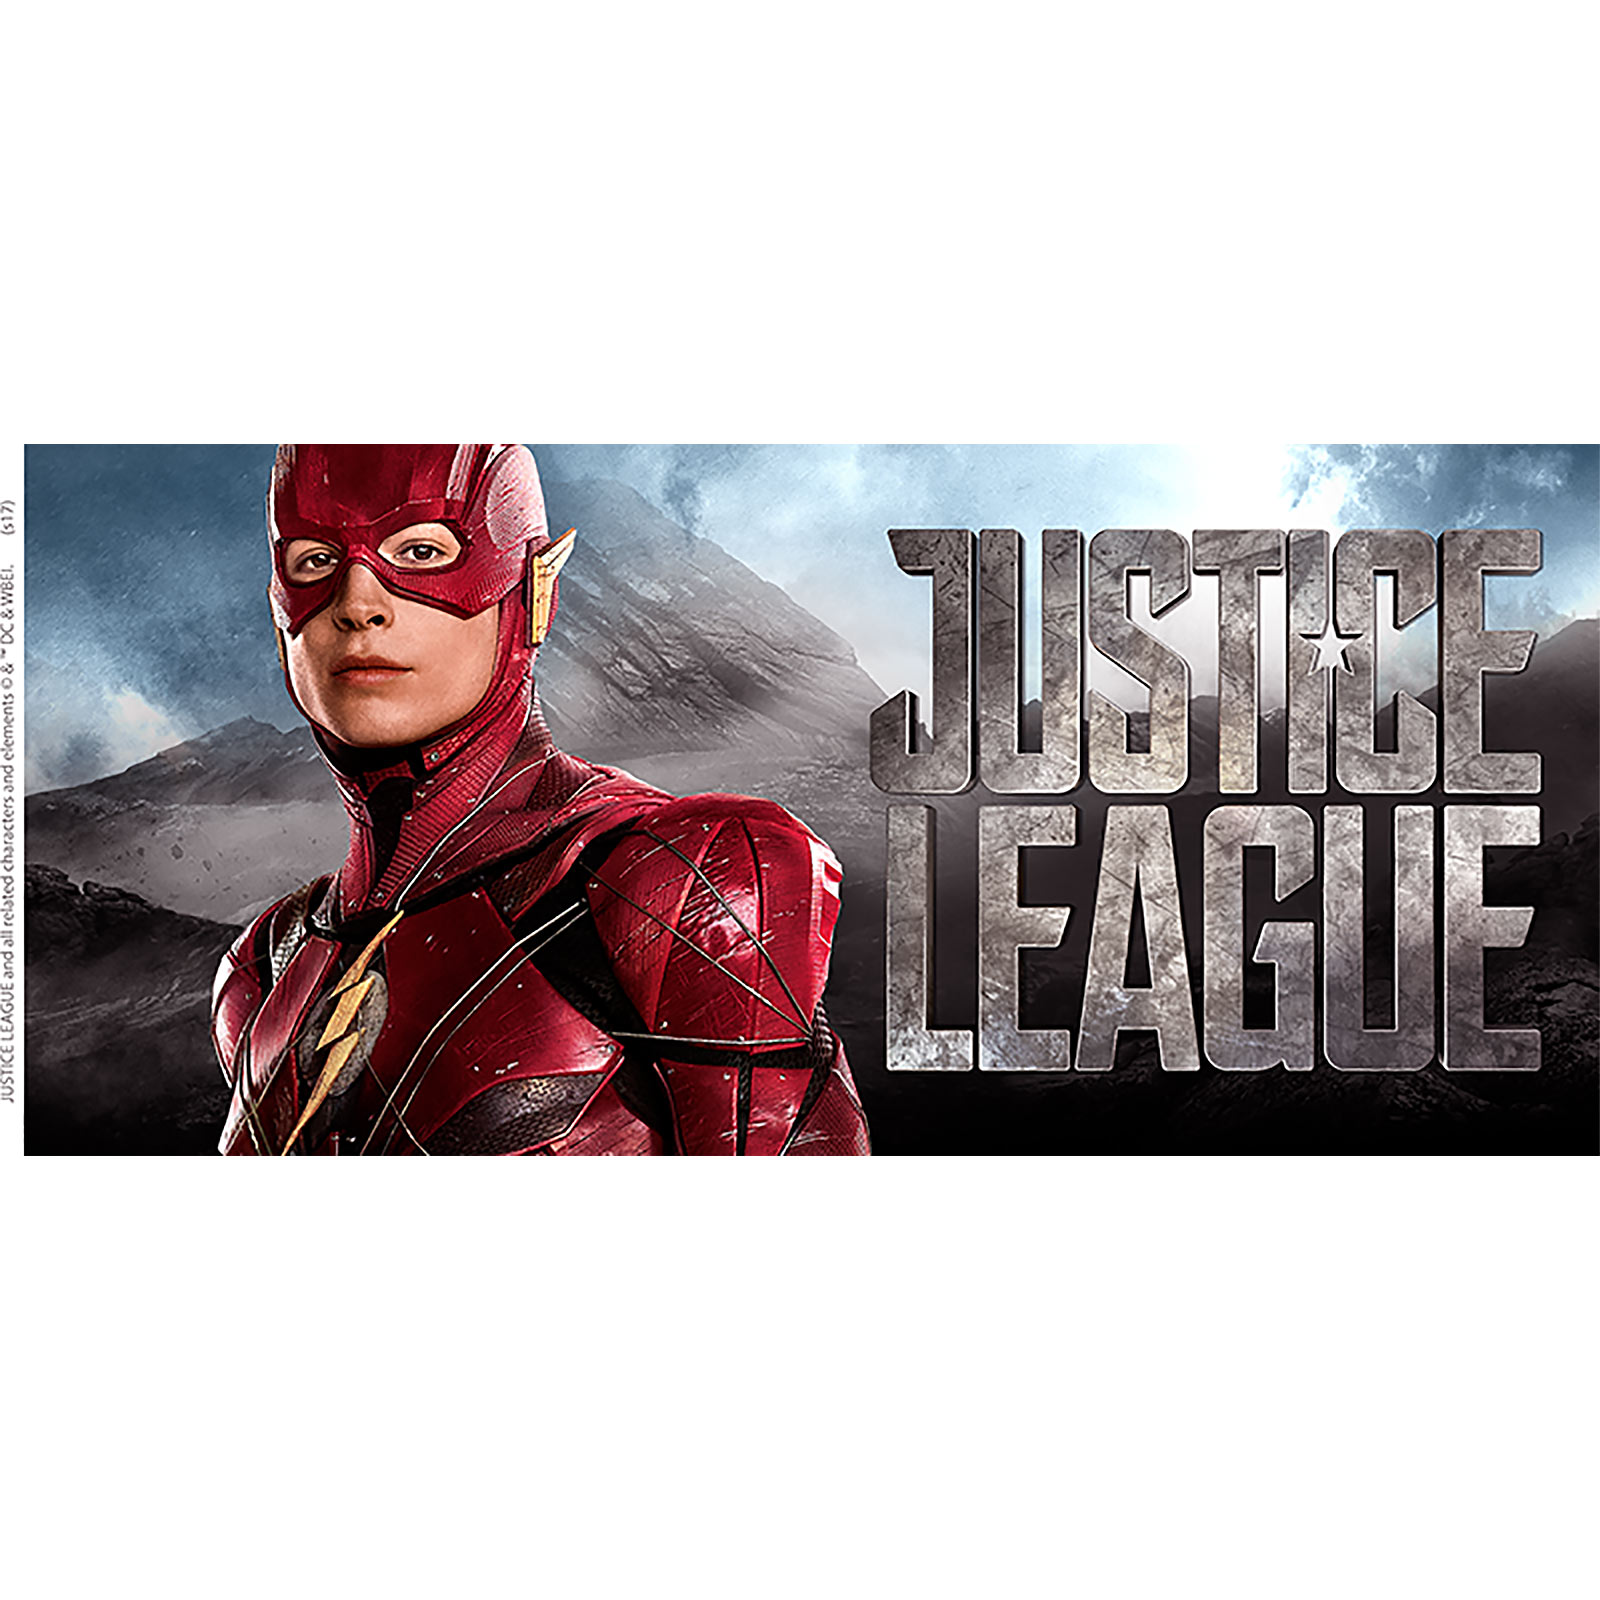 Flash Mug - Justice League